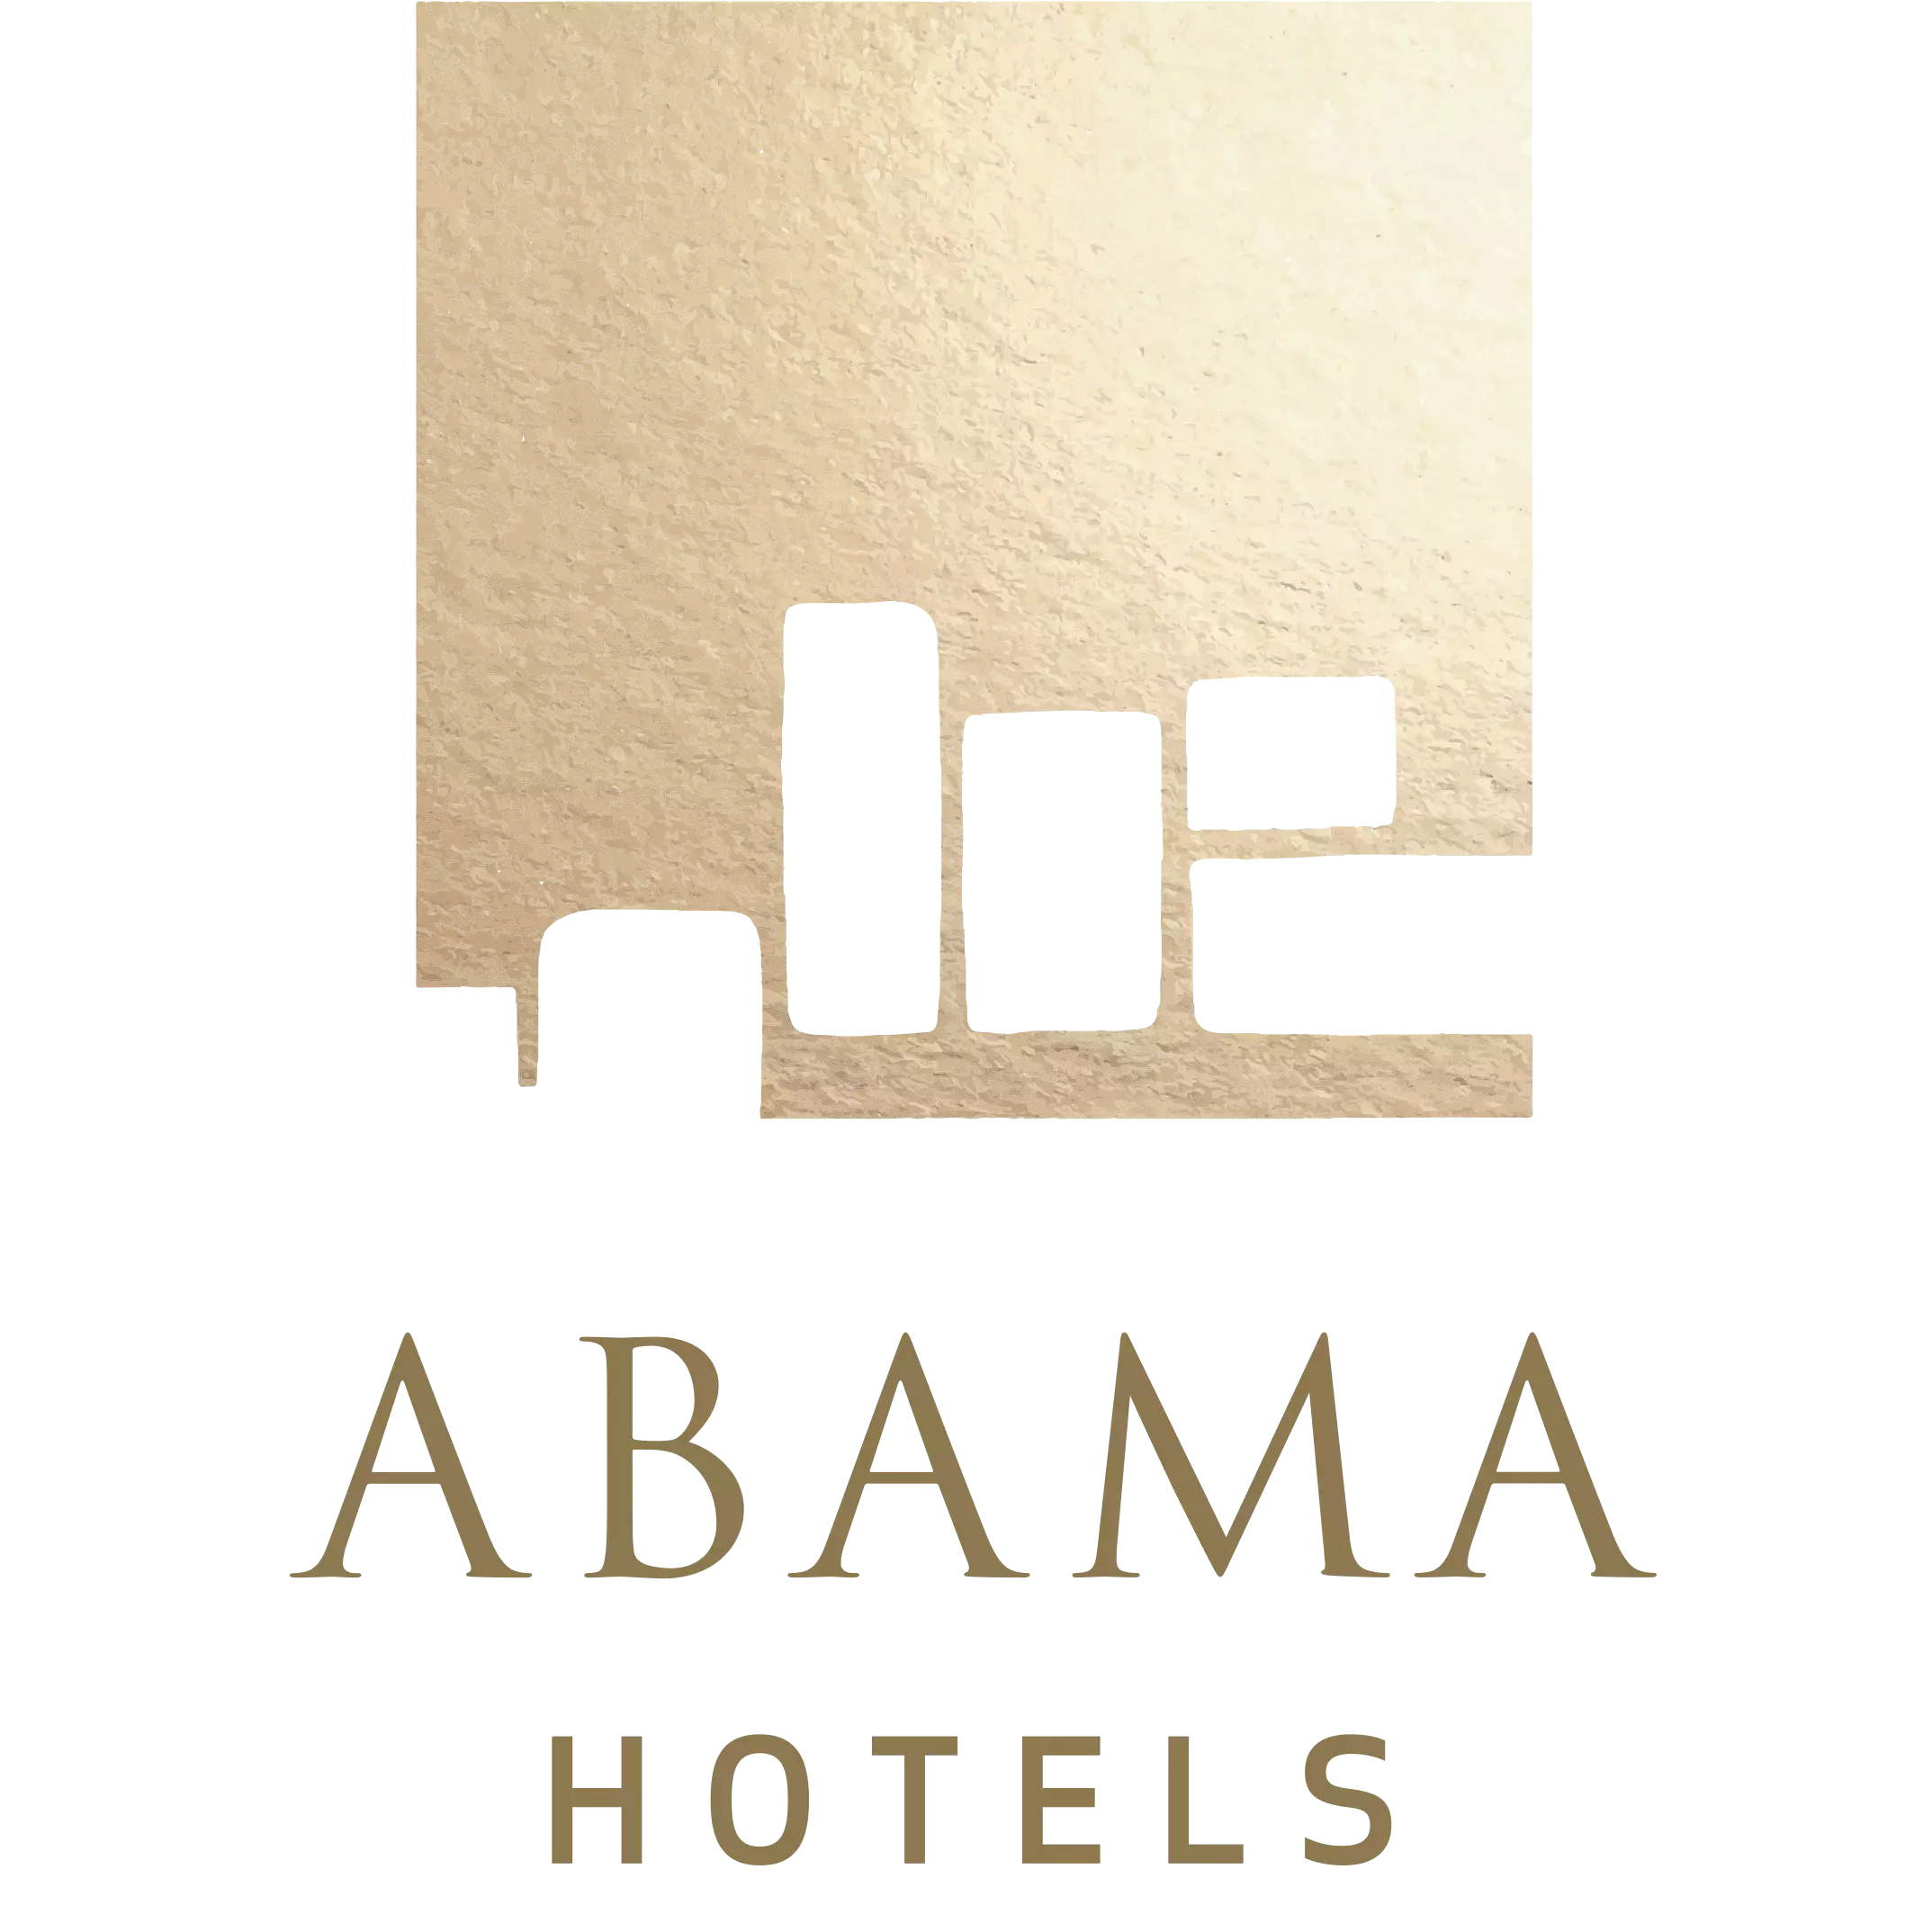 ABAMA_HOTELS_WEB